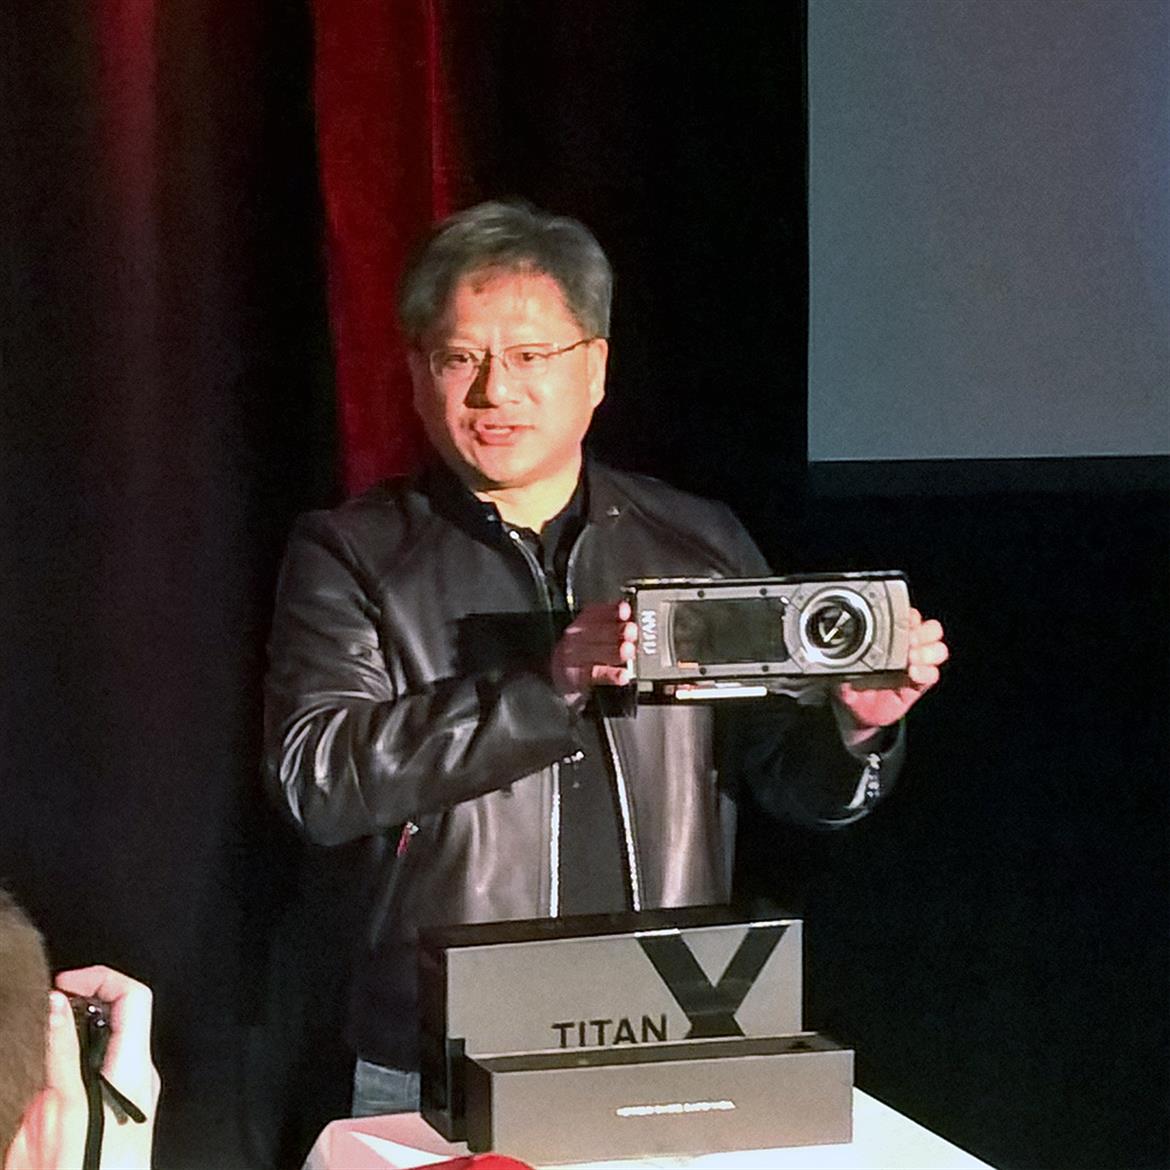 NVIDIA Announces Flagship GeForce GTX Titan X 12GB GPU At GDC 2015